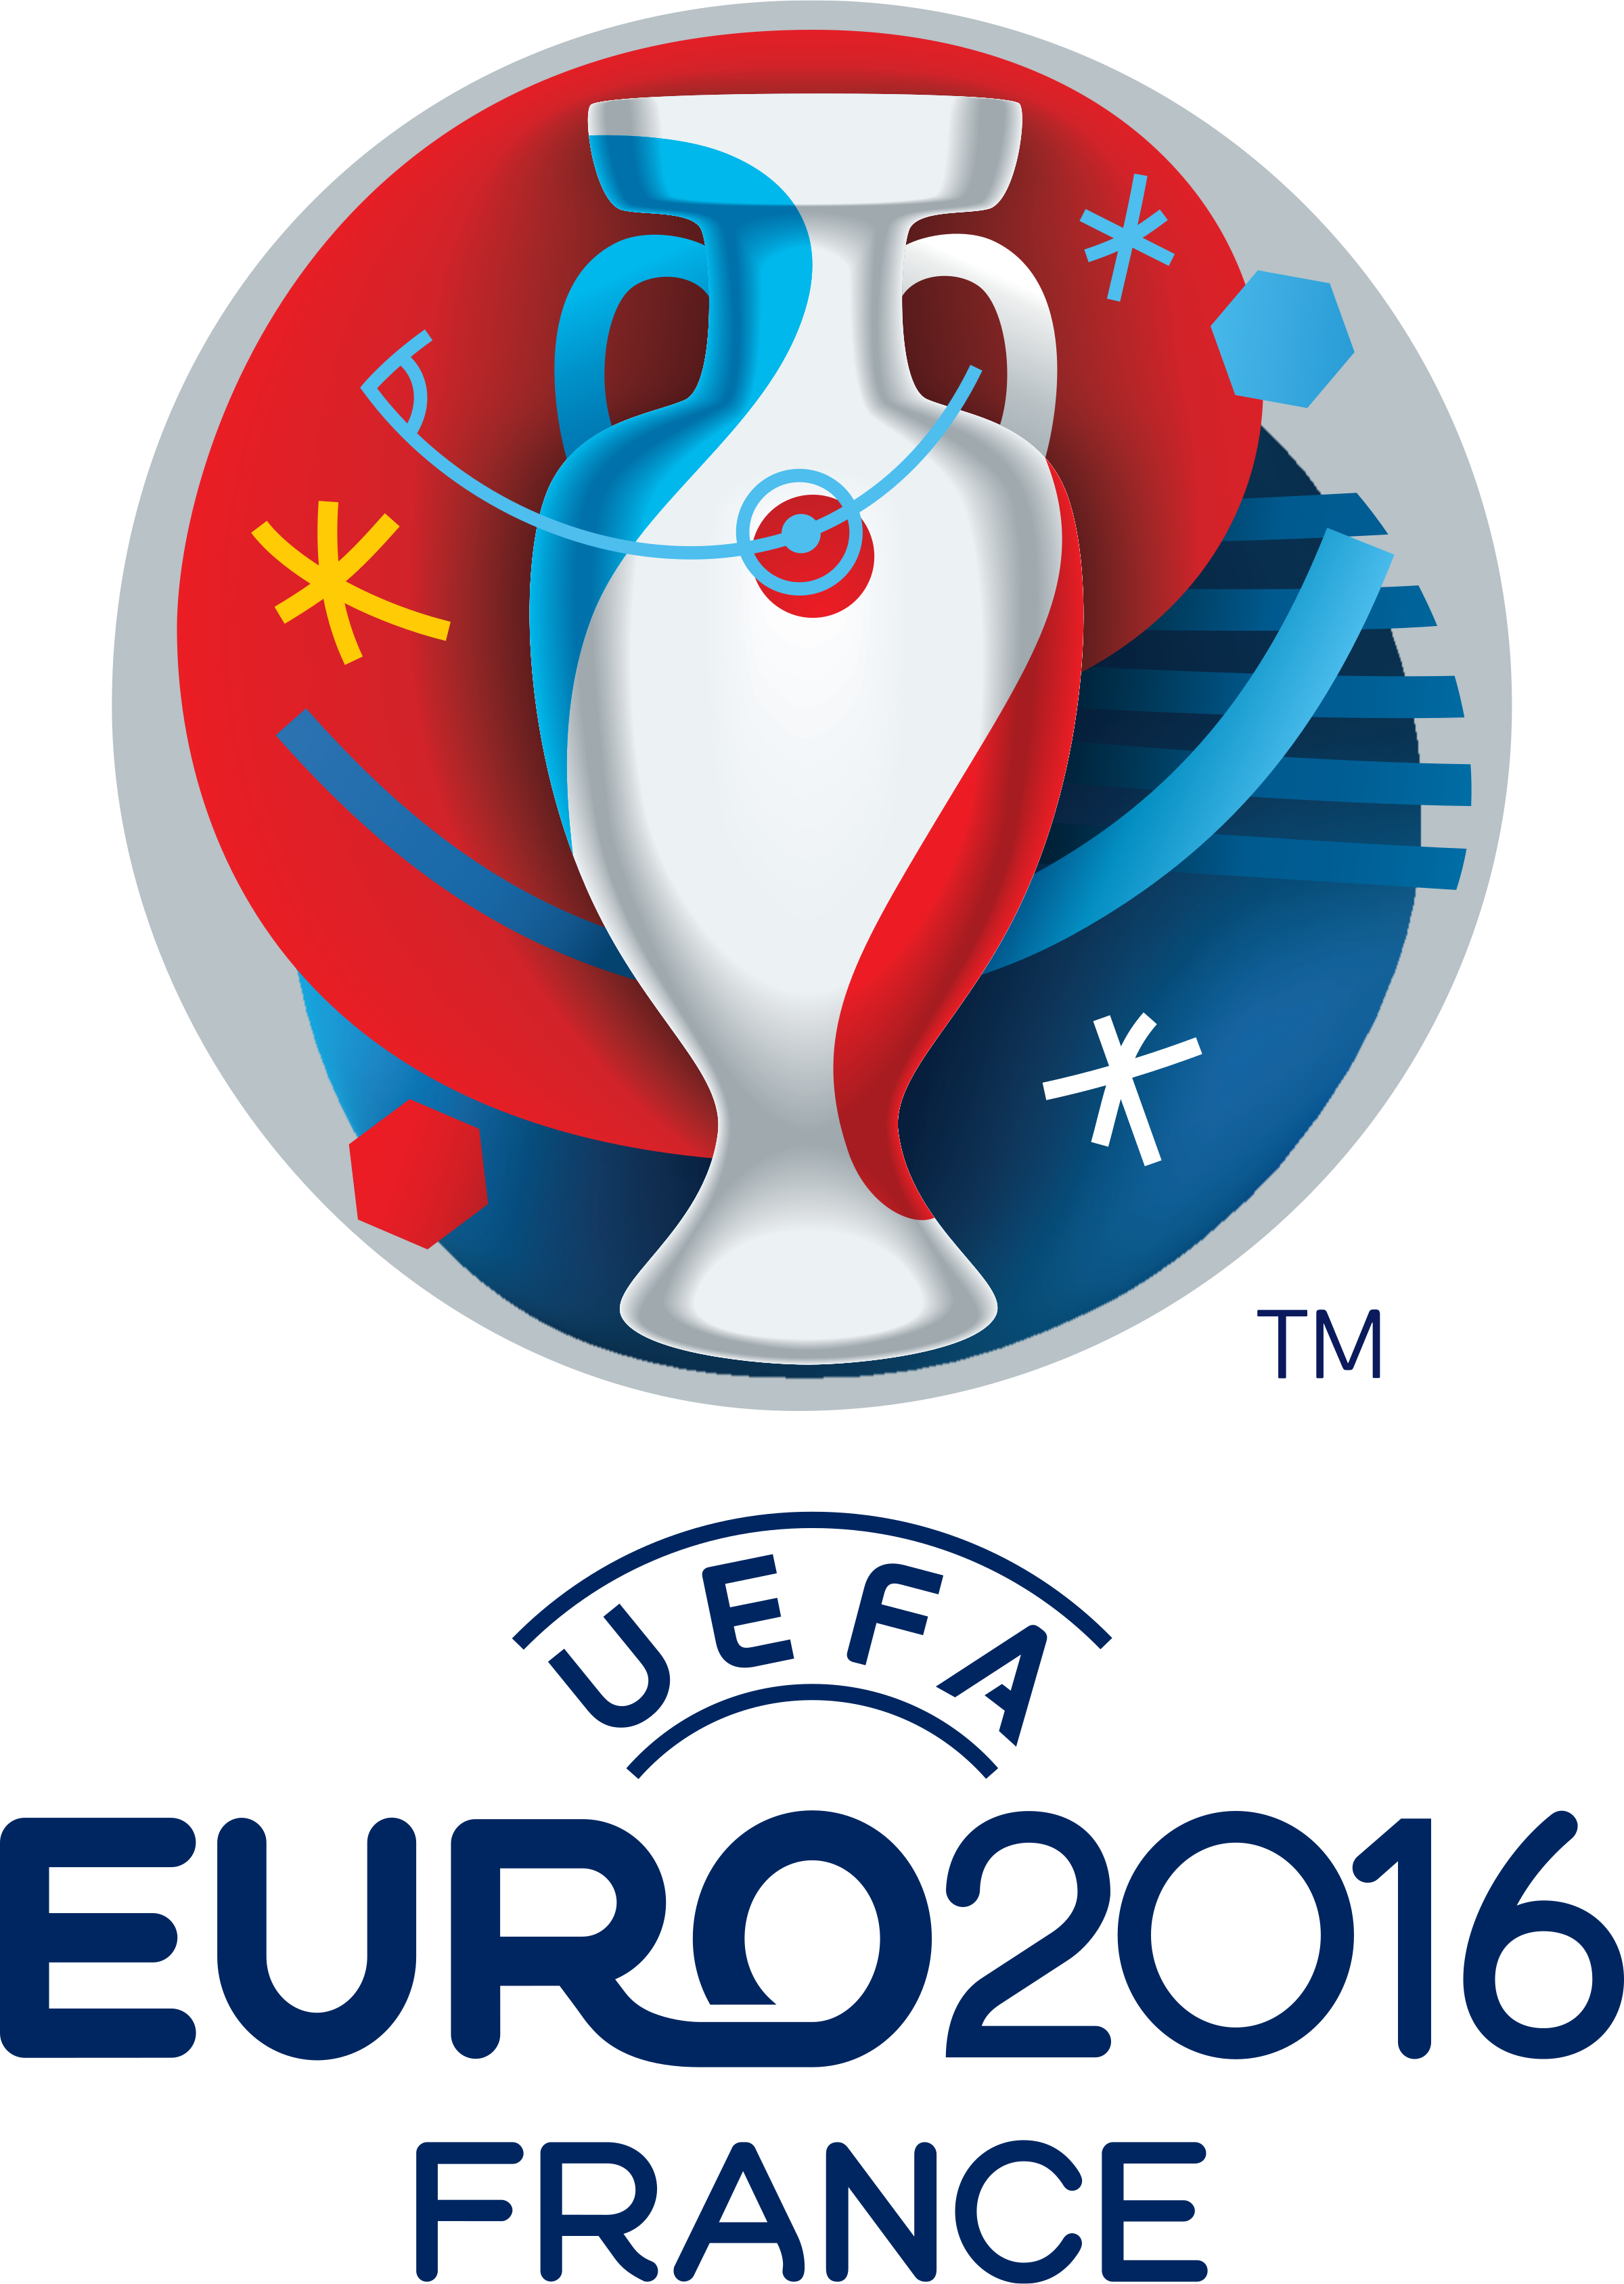 Euro 2016 Png - KibrisPDR